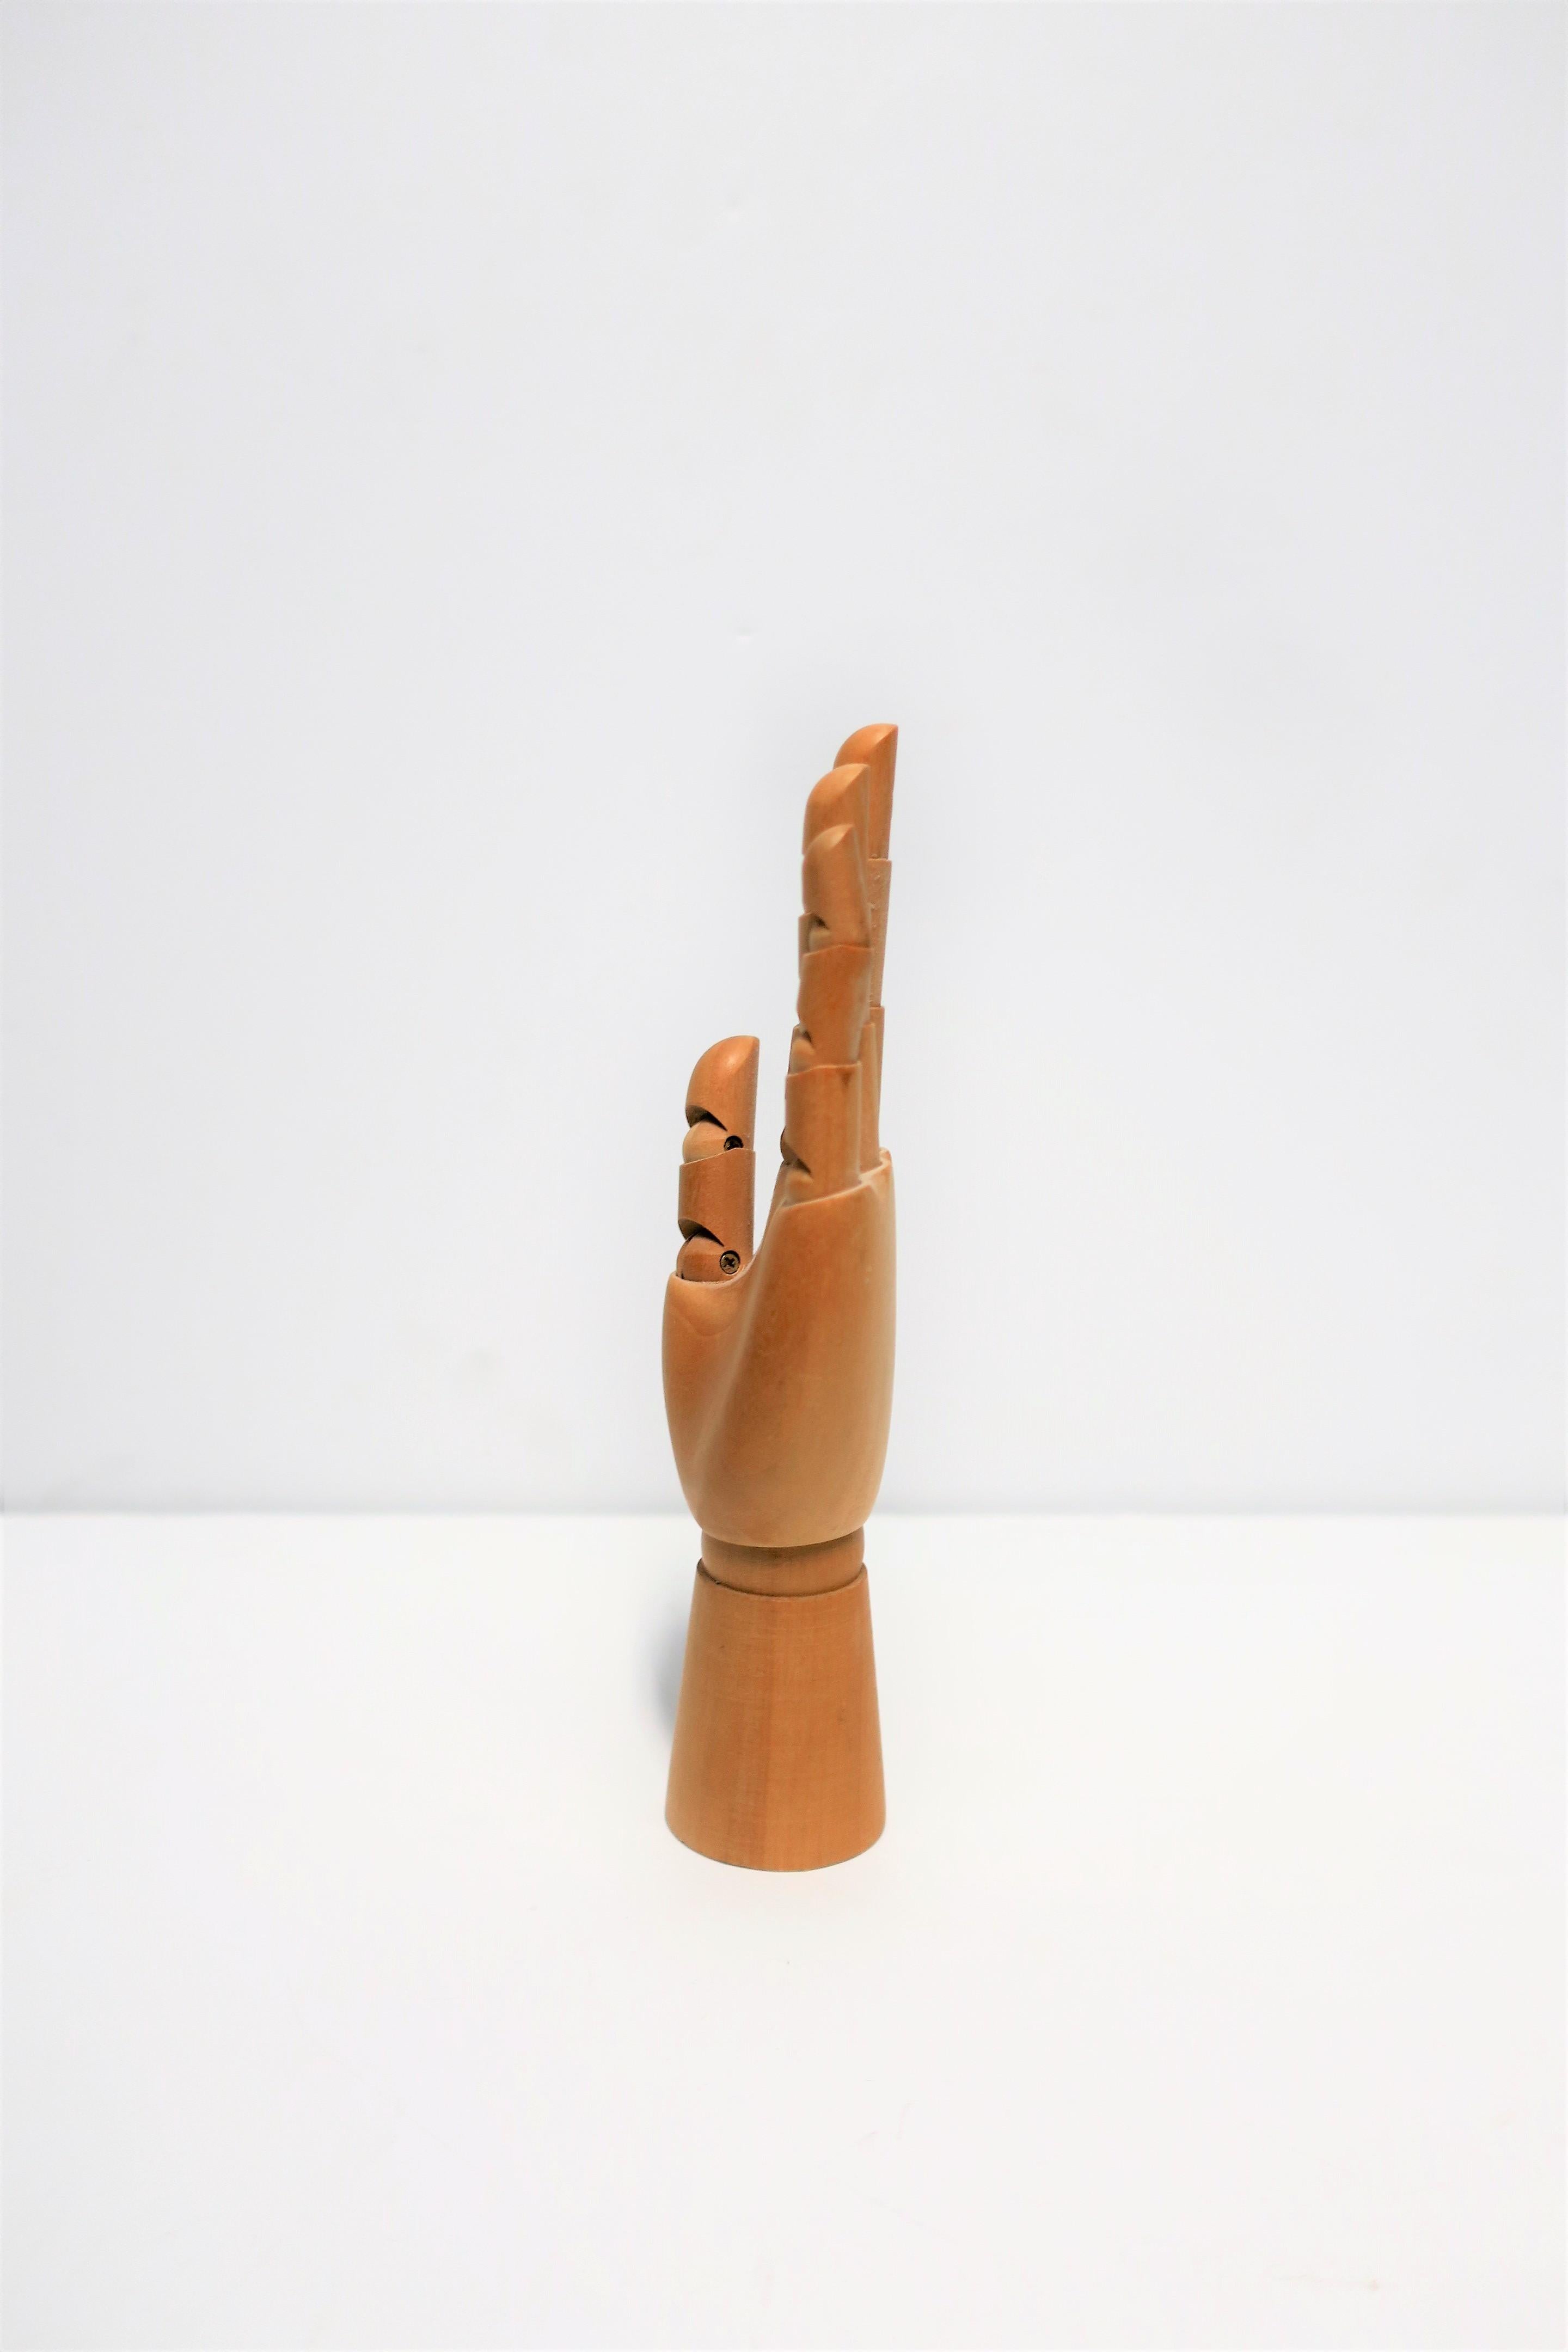 Articulating Wood Hand Sculpture Piece 2